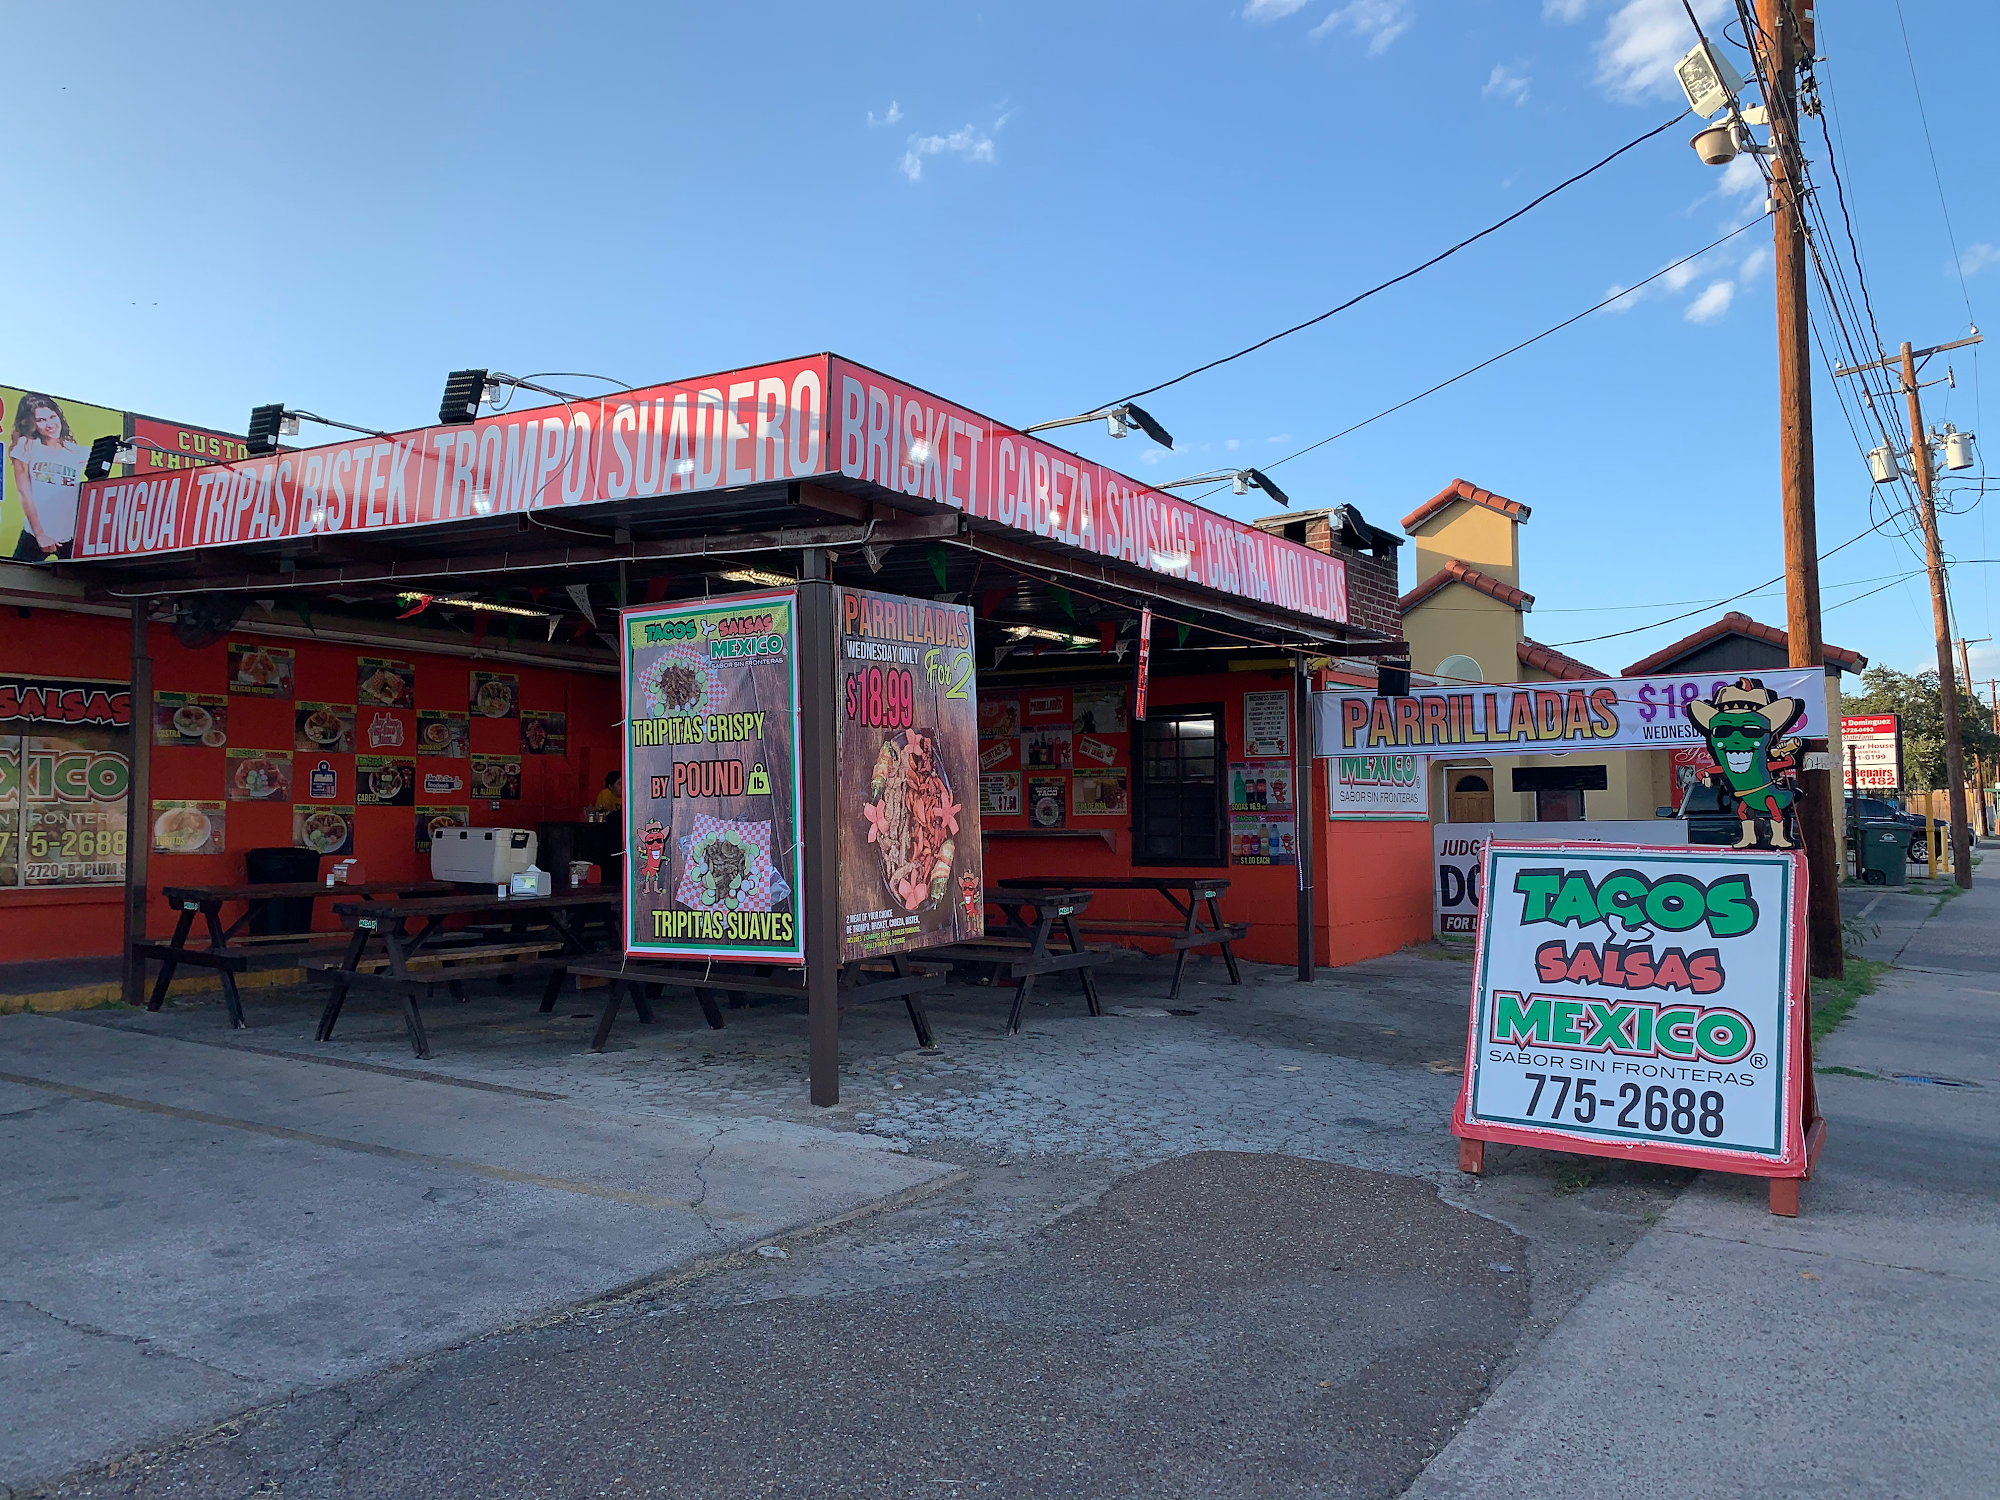 Tacos & Salsas Mexico Restaurant